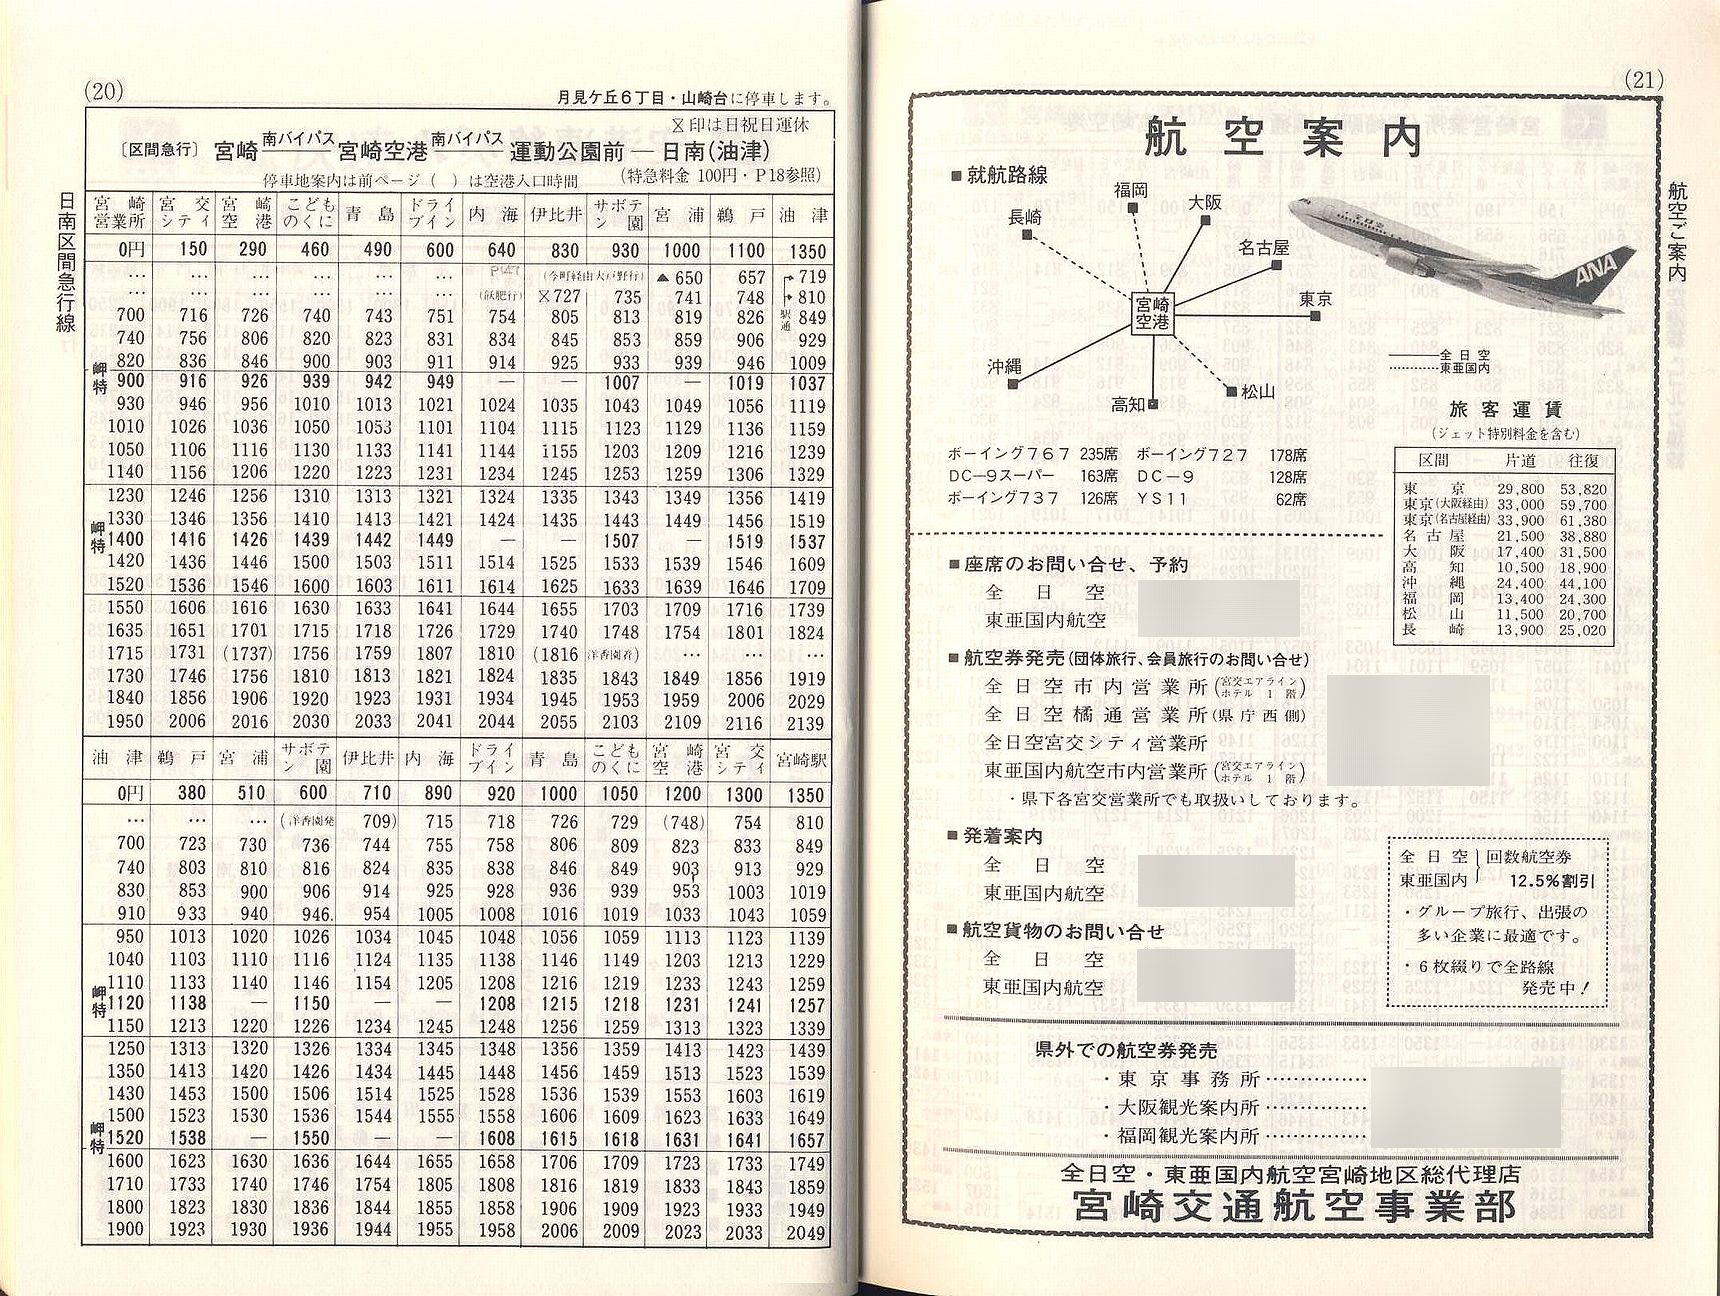 1984-10-01改正_宮崎交通_冊子時刻表_020